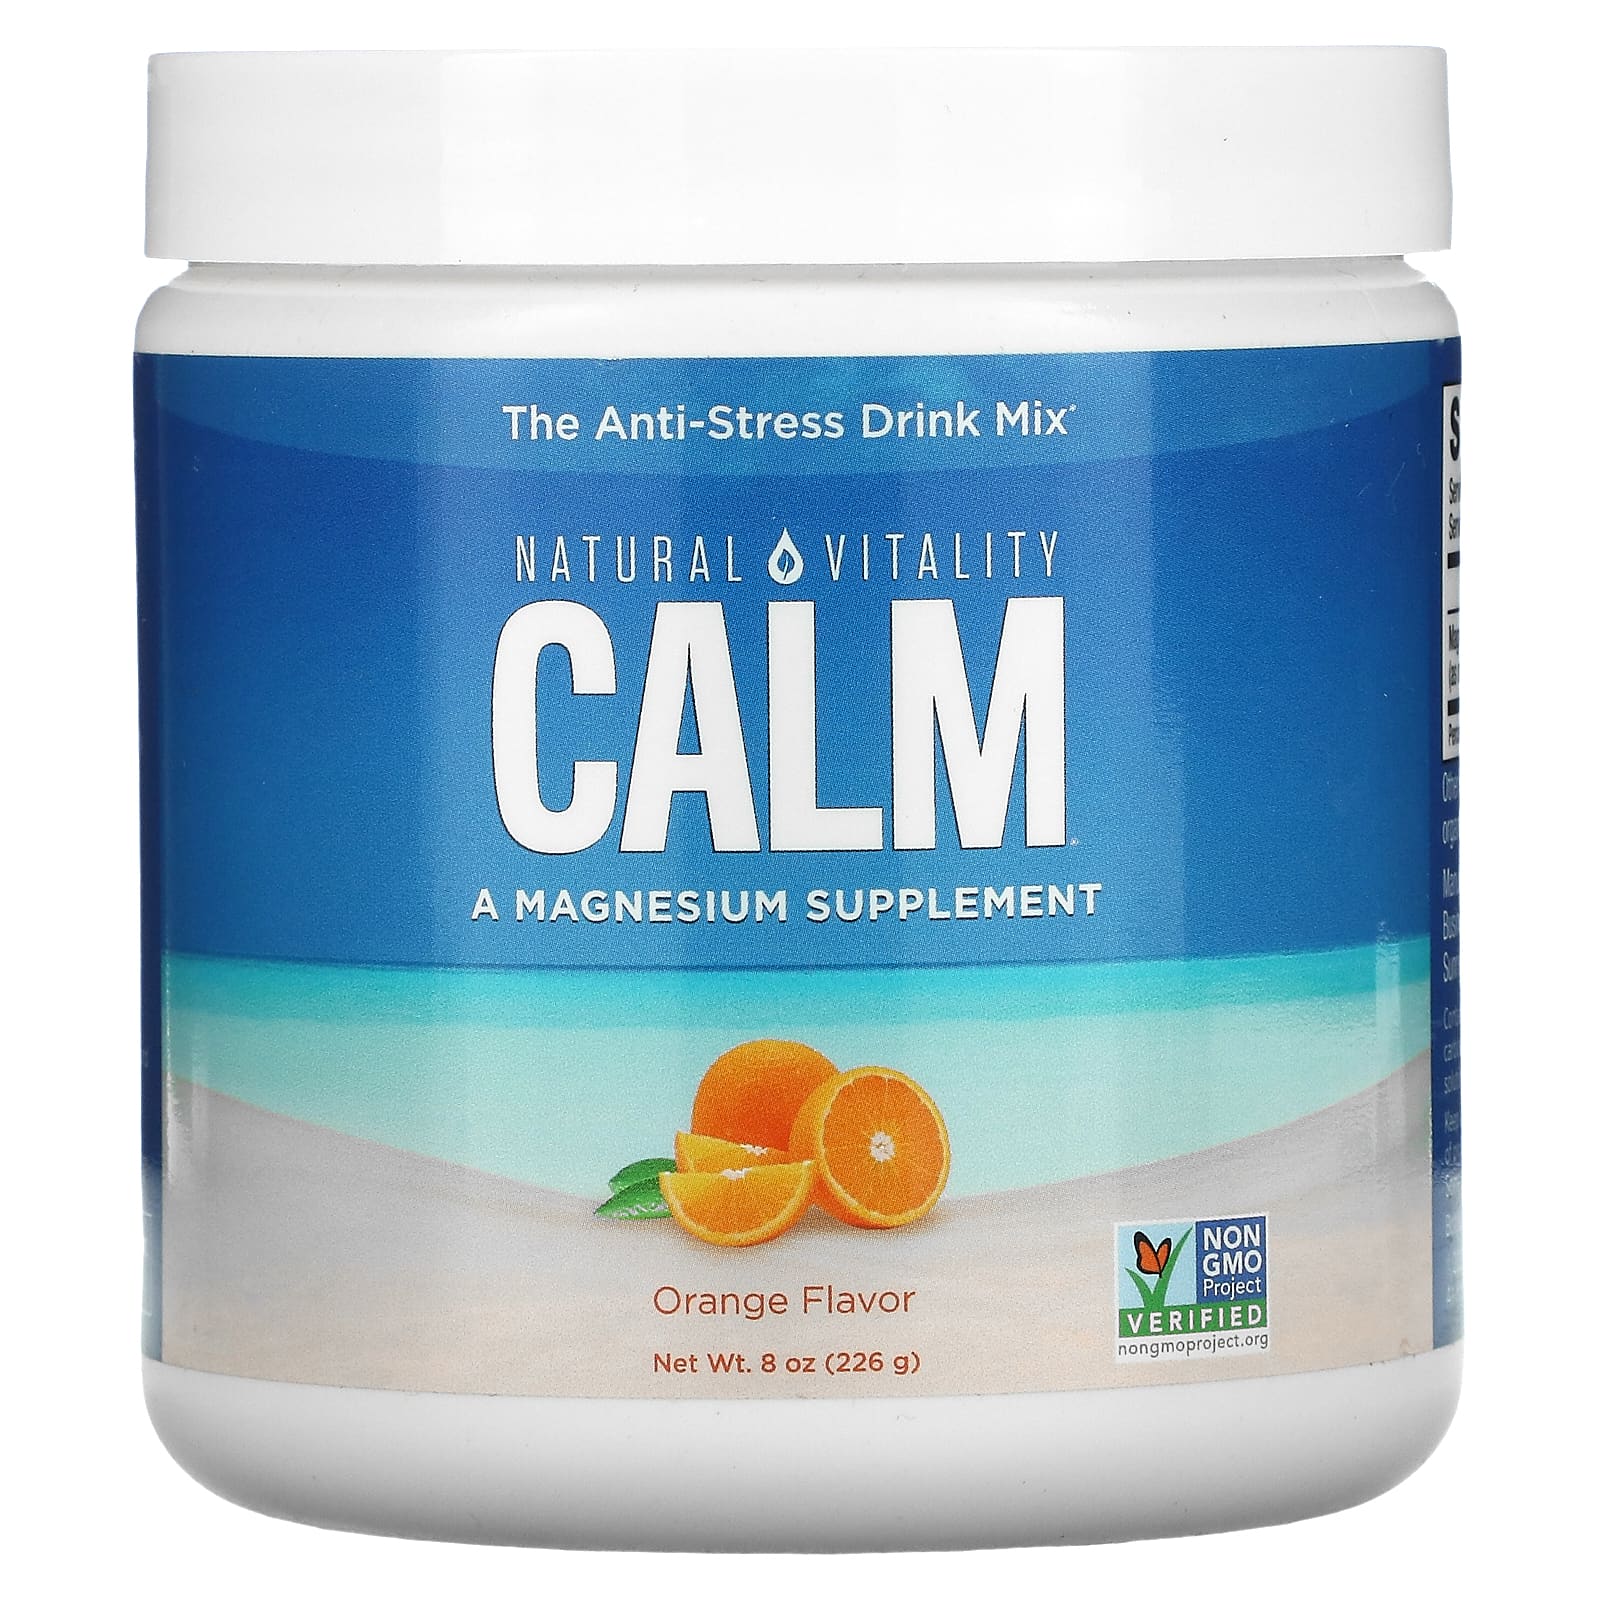 Natural Vitality CALM антистрессовая смесь для напитков апельсин 226 г (8 унций) natural vitality calm антистрессовая смесь для напитков без добавок 226 г 8 унций